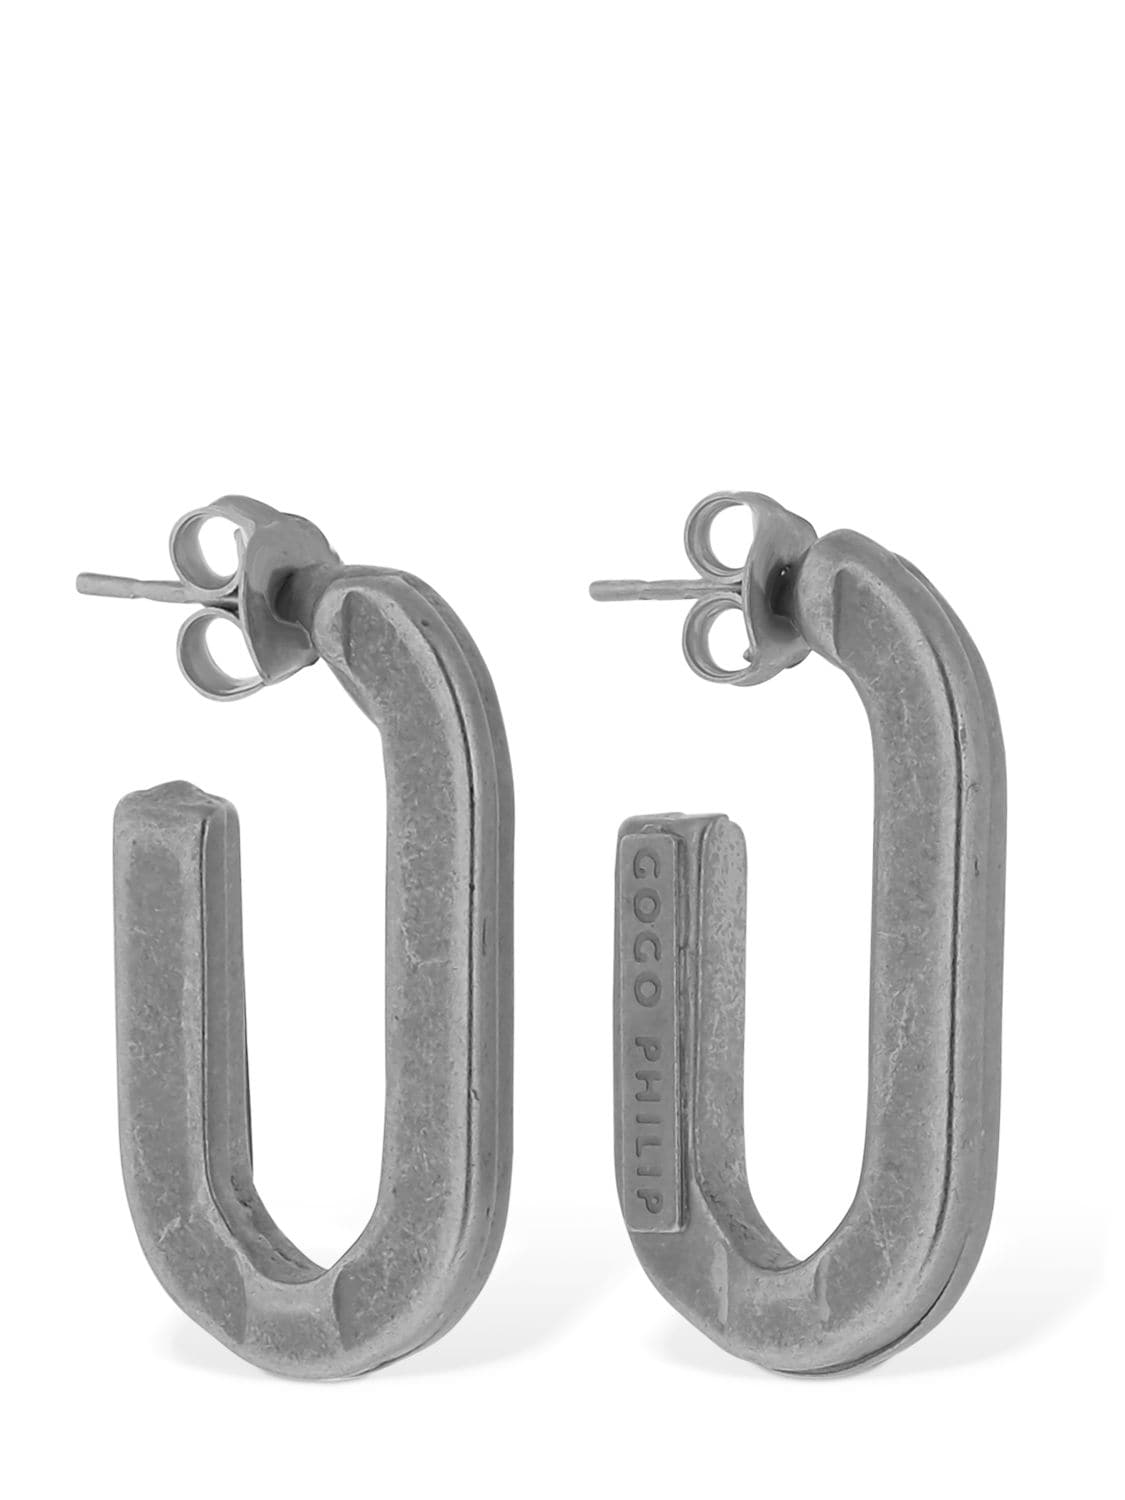 Gogo Philip Studio Ghost Earrings In Silver Matte